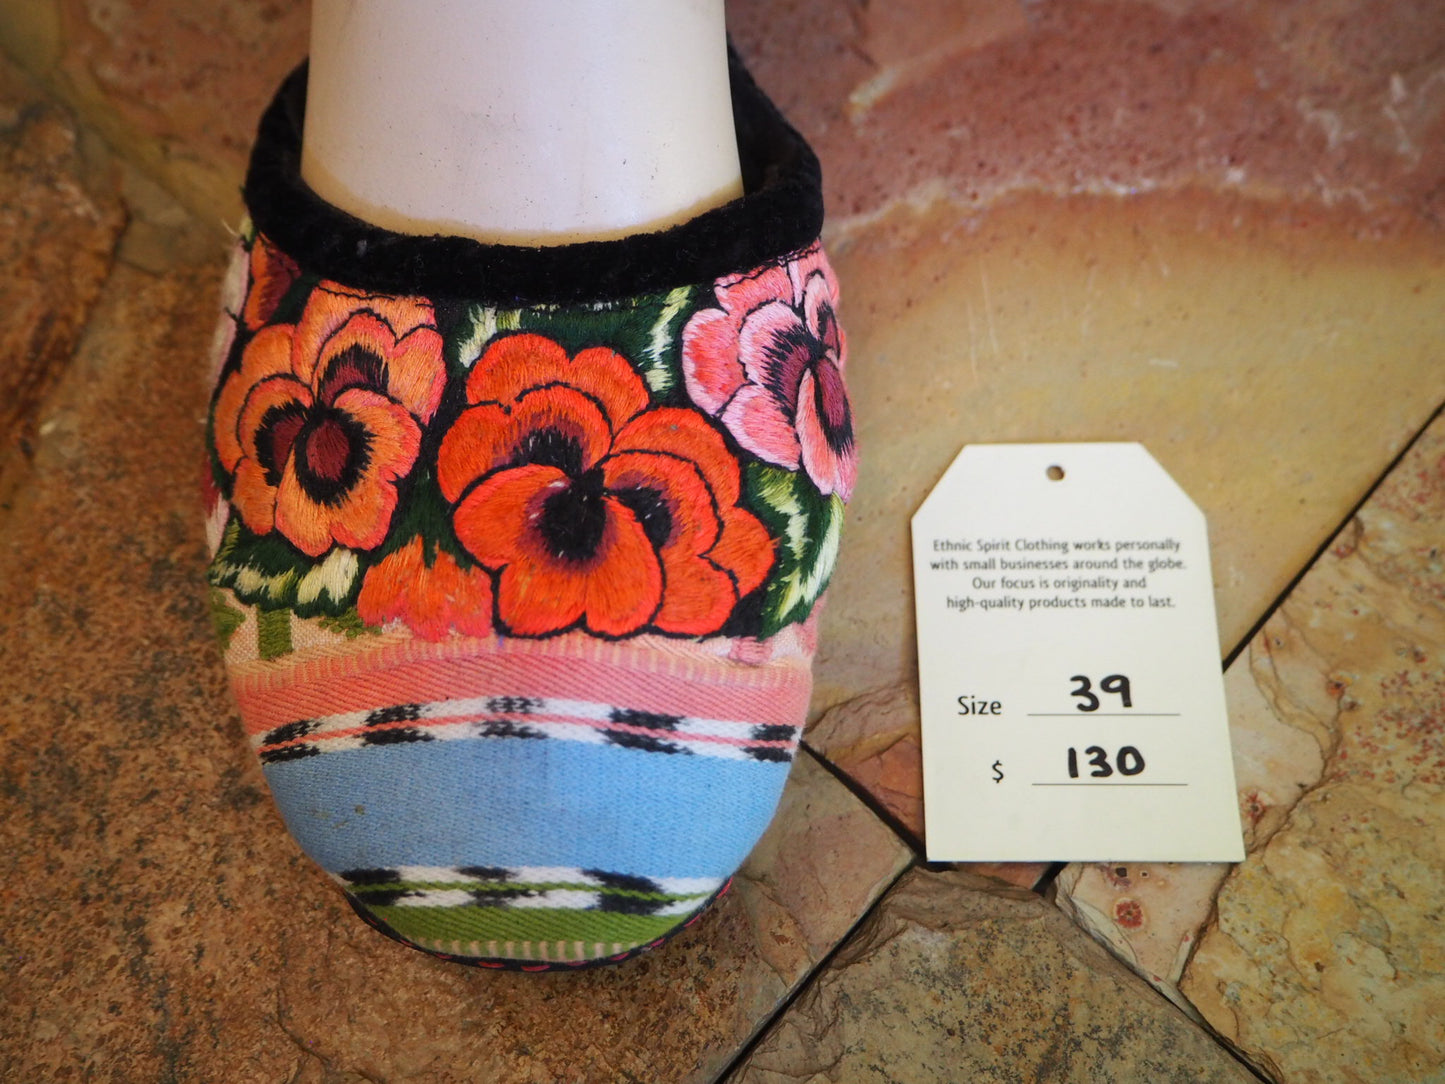 Size 39 Ballerina Sandals - Pastel Garden